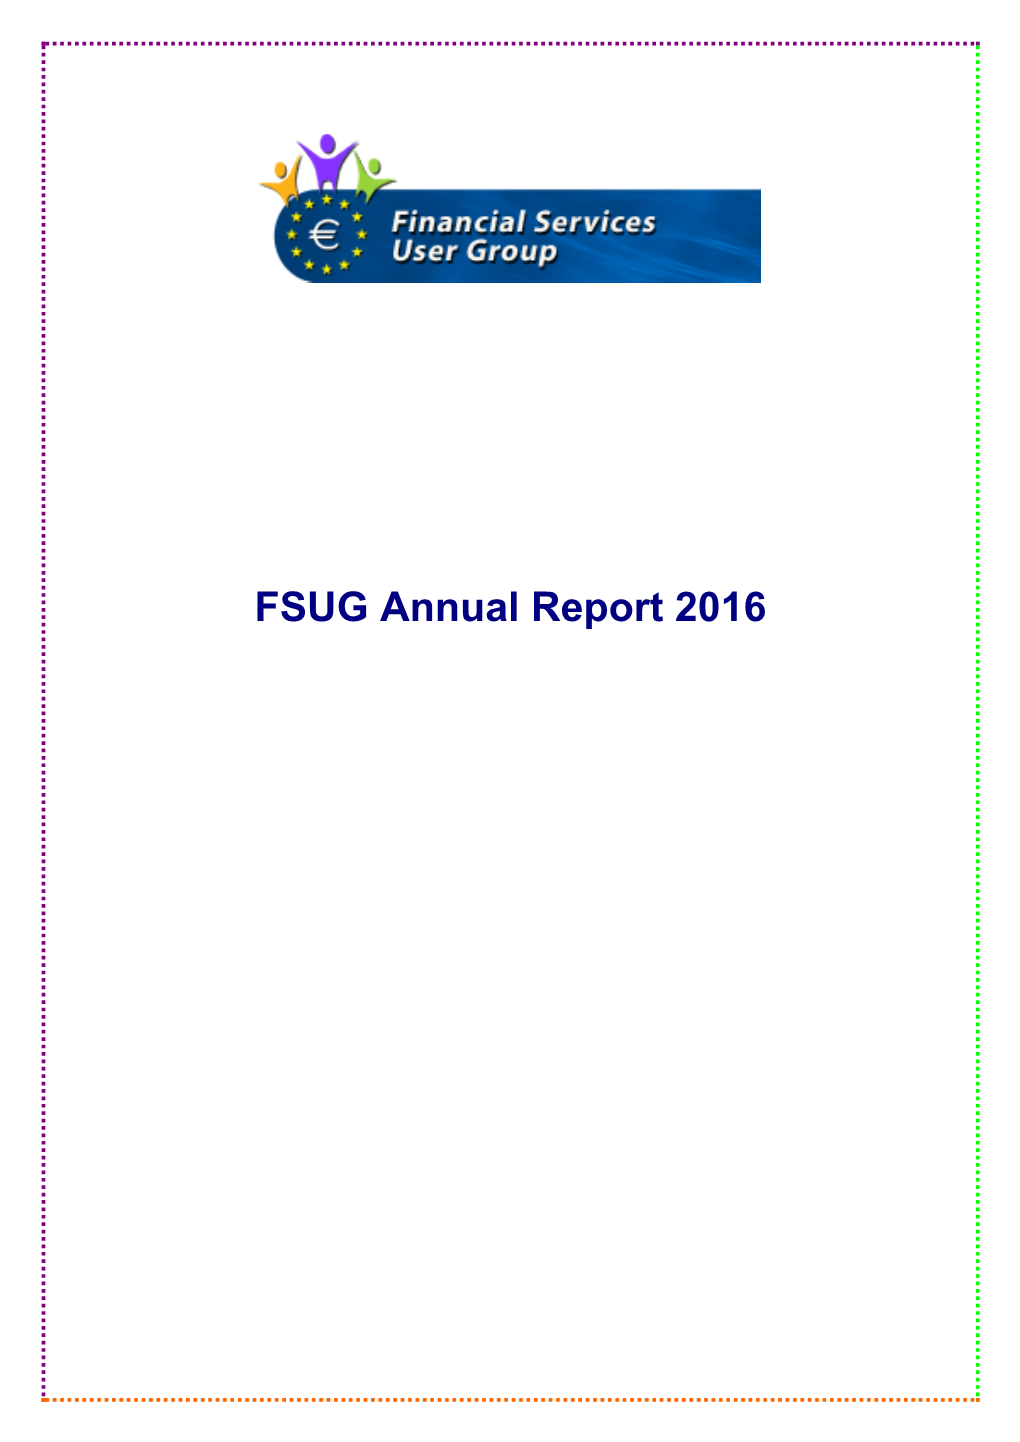 FSUG Annual Report 2016